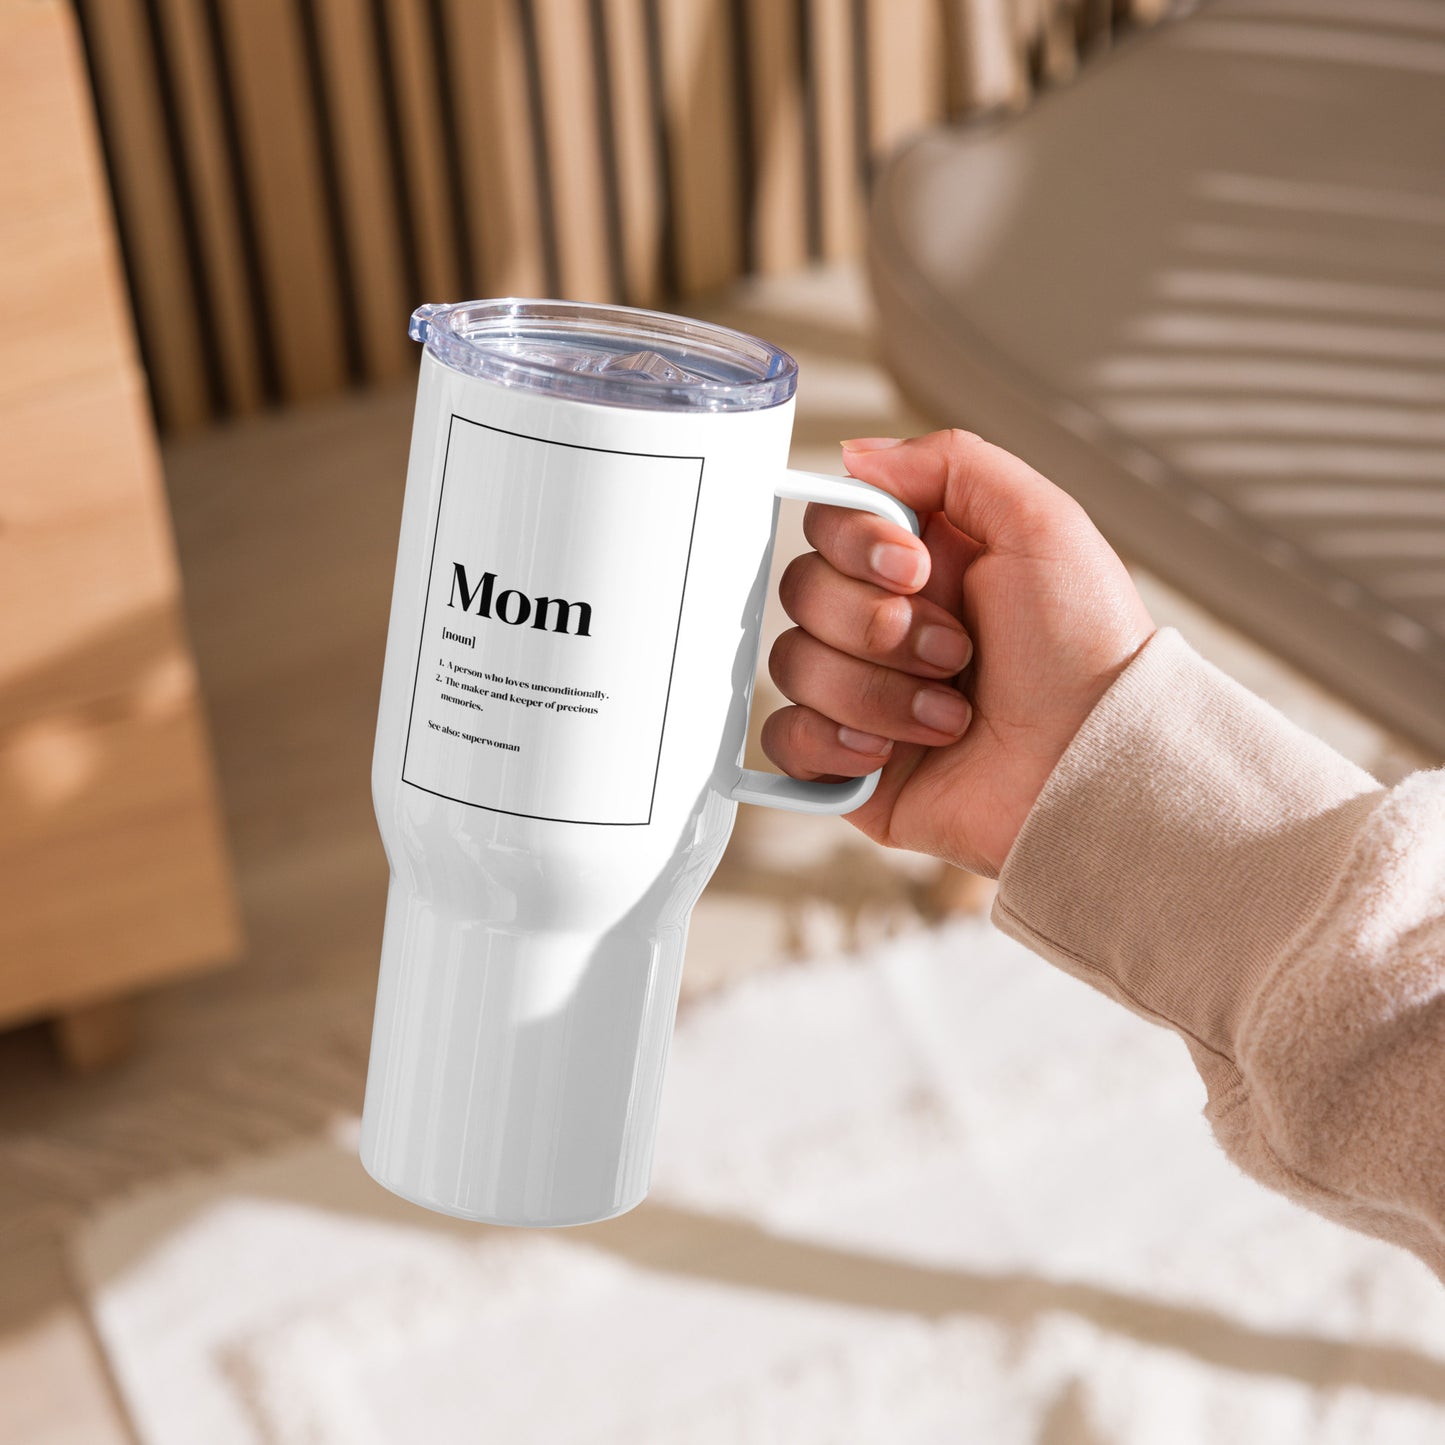 Mom Noun Travel mug with a handle